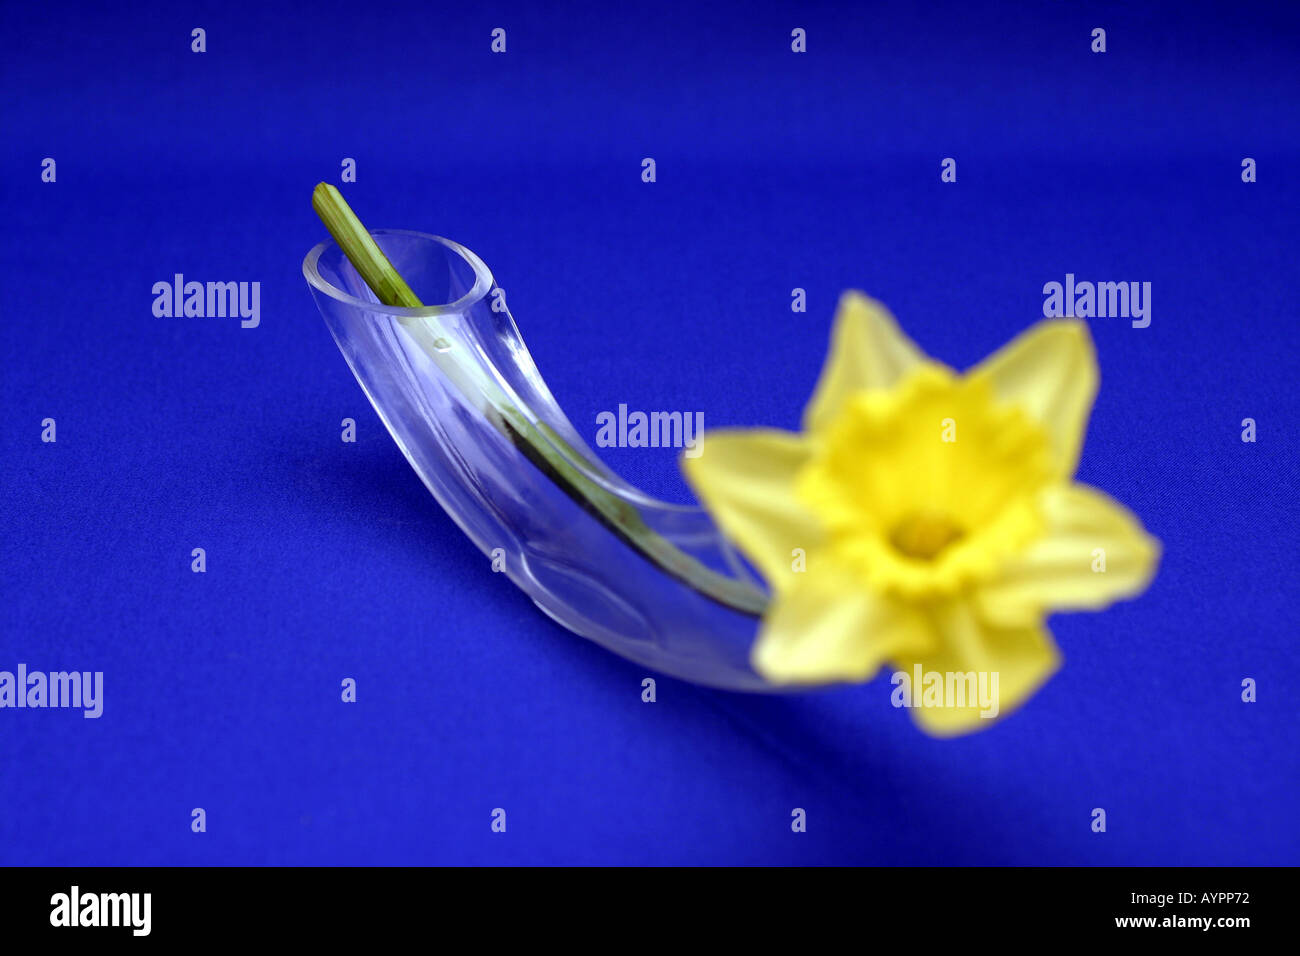 Stelo di un daffodil inserito nel tubo di vetro avente estremità aperte Foto Stock